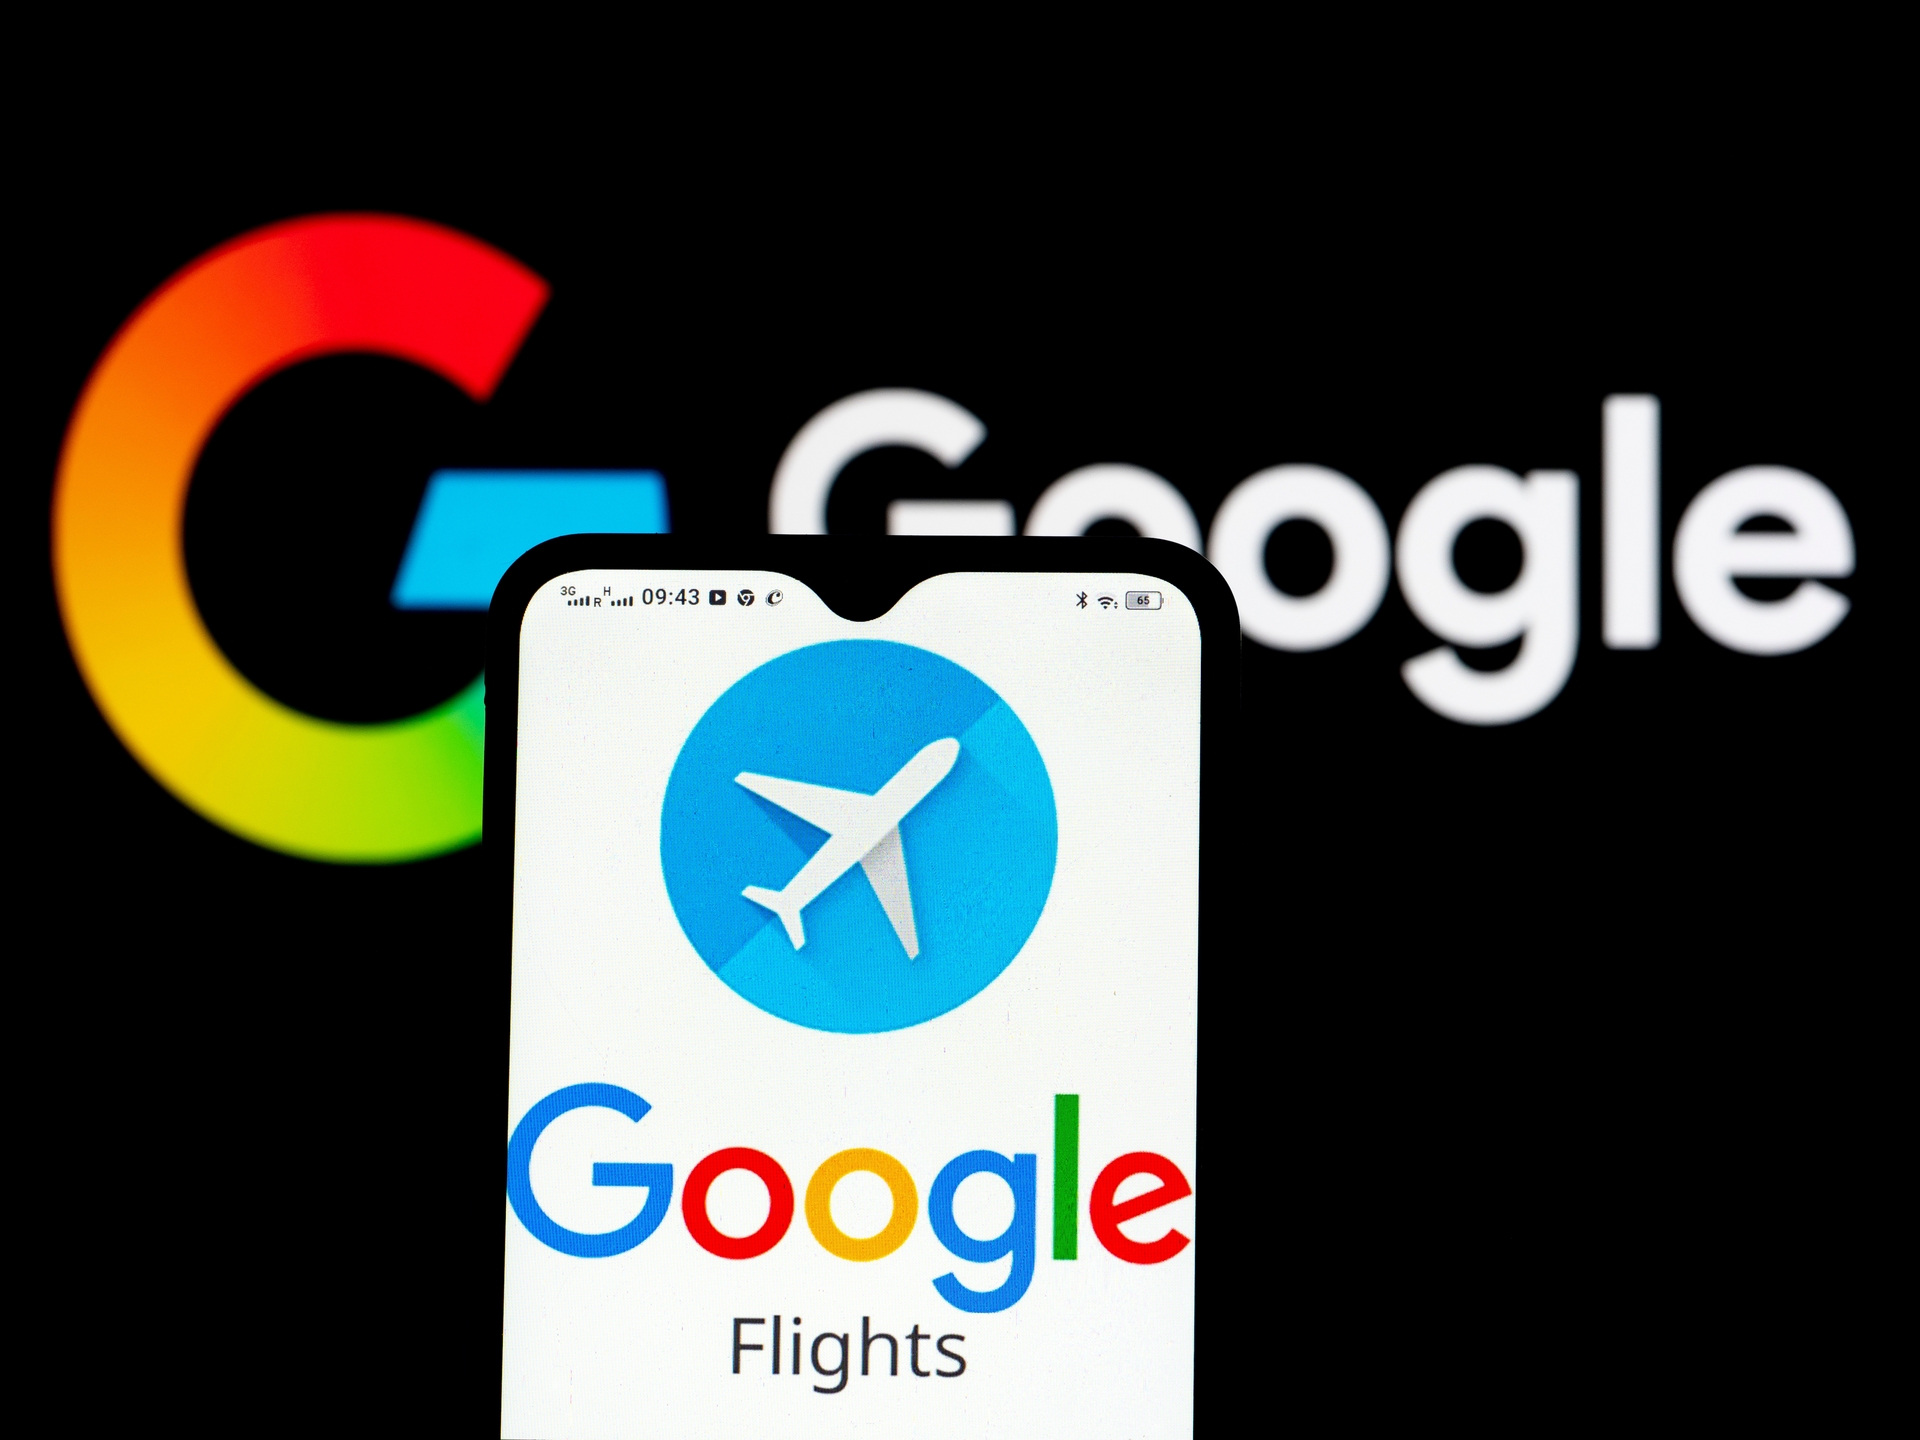 Hotels, Flights, Play Store : Google dévoile ses engagements pour mieux protéger ses consommateurs européens